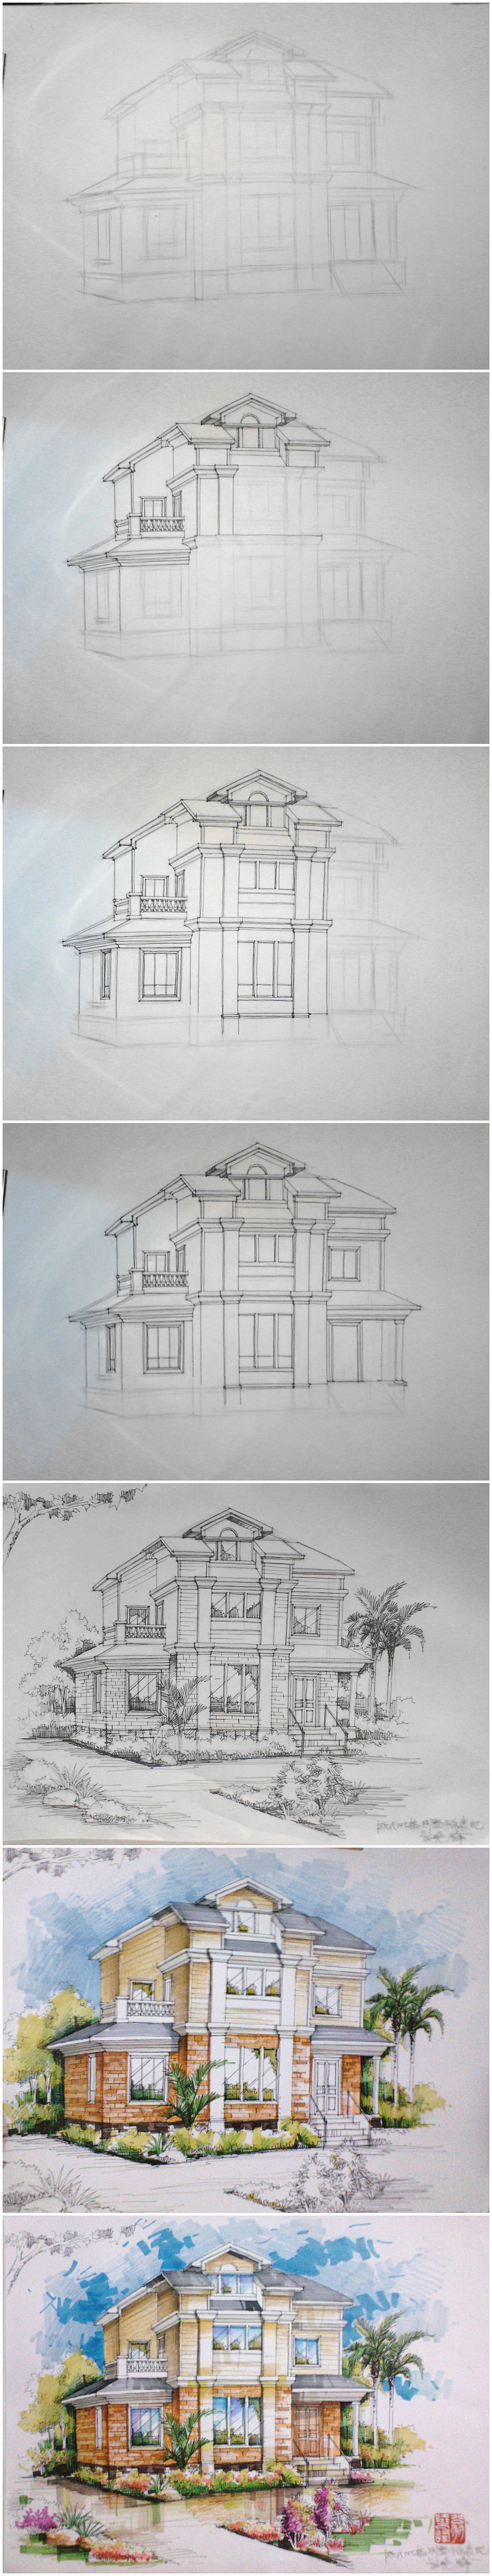 欧式别墅外观手绘效果图步骤图|空间|建筑设计|翁小峰